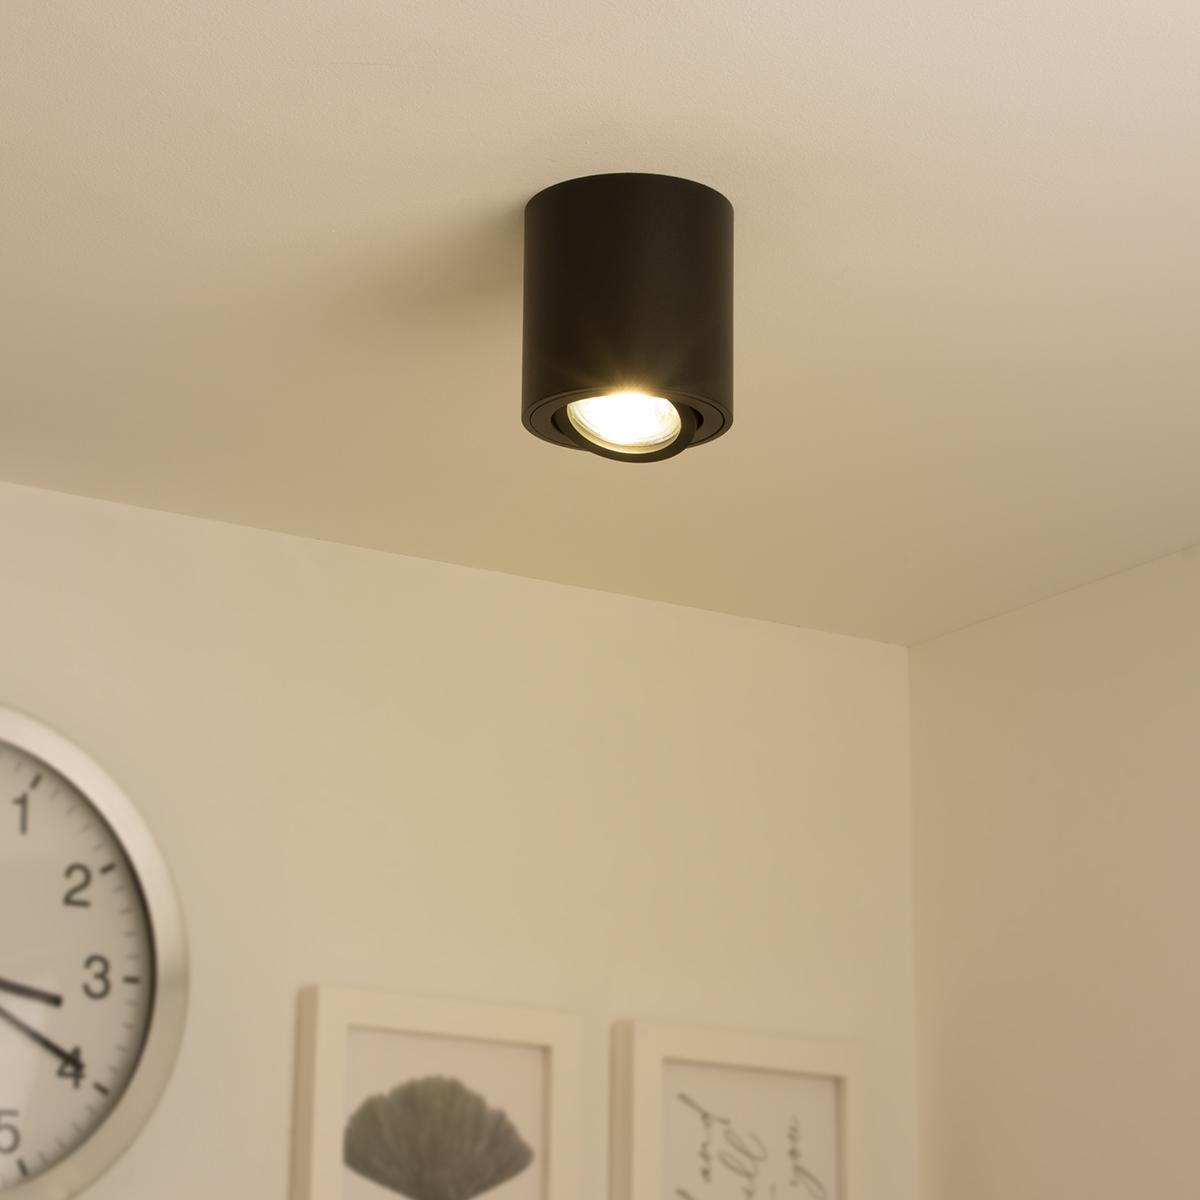 Runder Aufbaustrahler schwenkbar Deckenbeleuchtung - Farbe: schwarz - LED Leuchtmittel: GU10 5W Warmweiß 230V dimmbar 40°